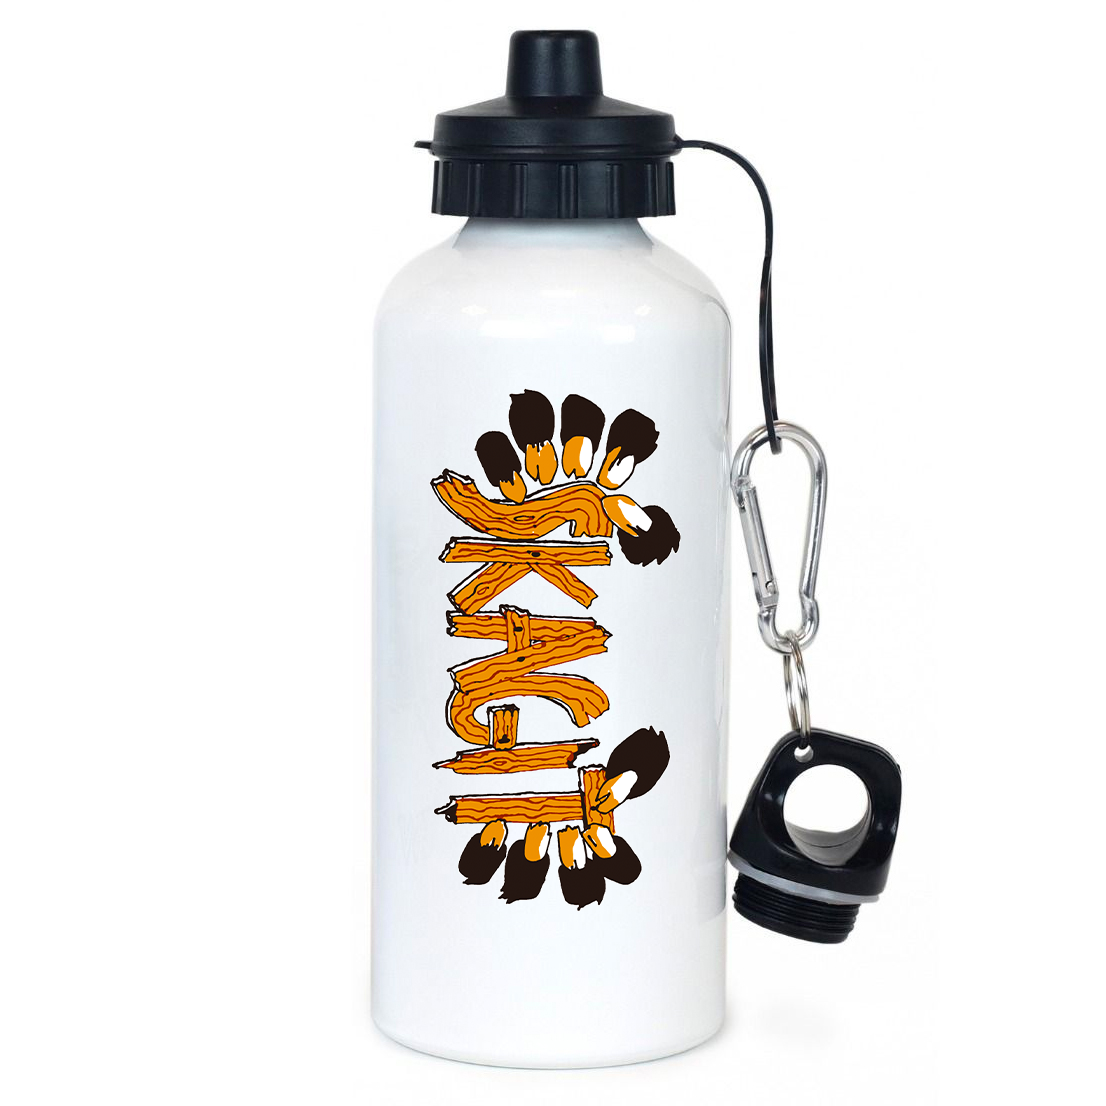 Skagit Volleyball Team Water Bottle